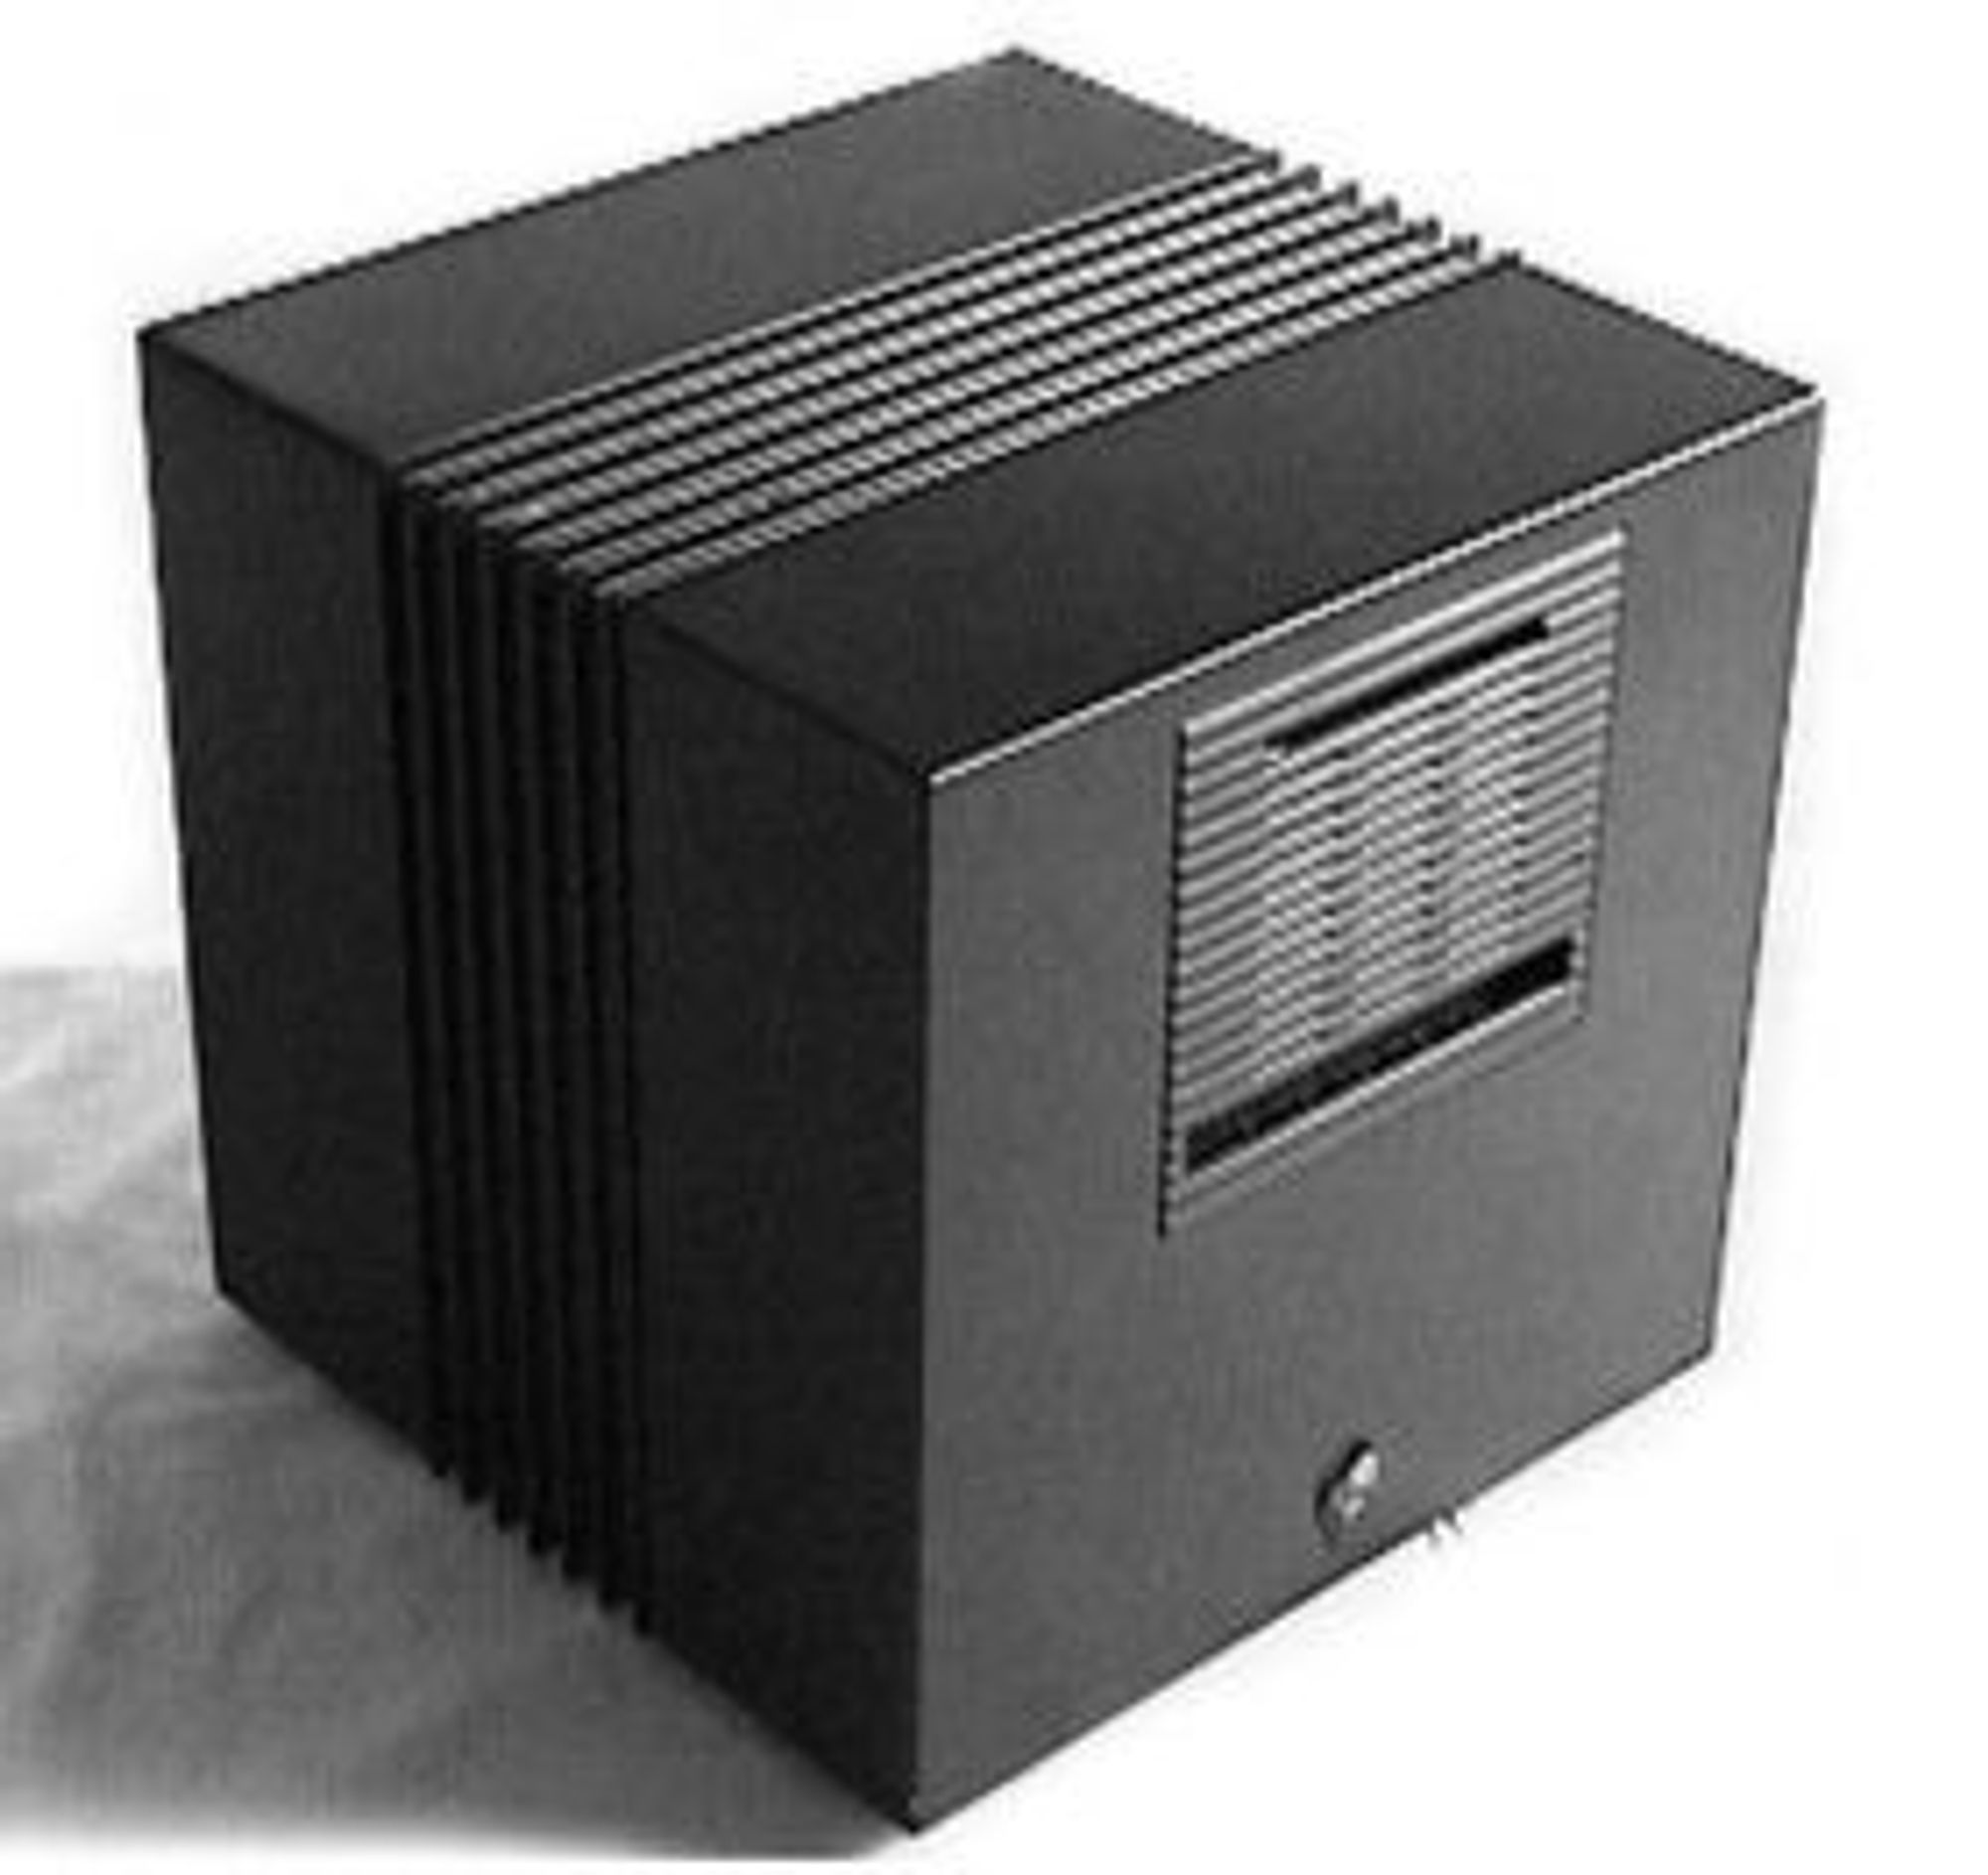 Verdens første webserver og nettsted ble kjørt på en maskin som dette, en NeXTcube fra NeXT.